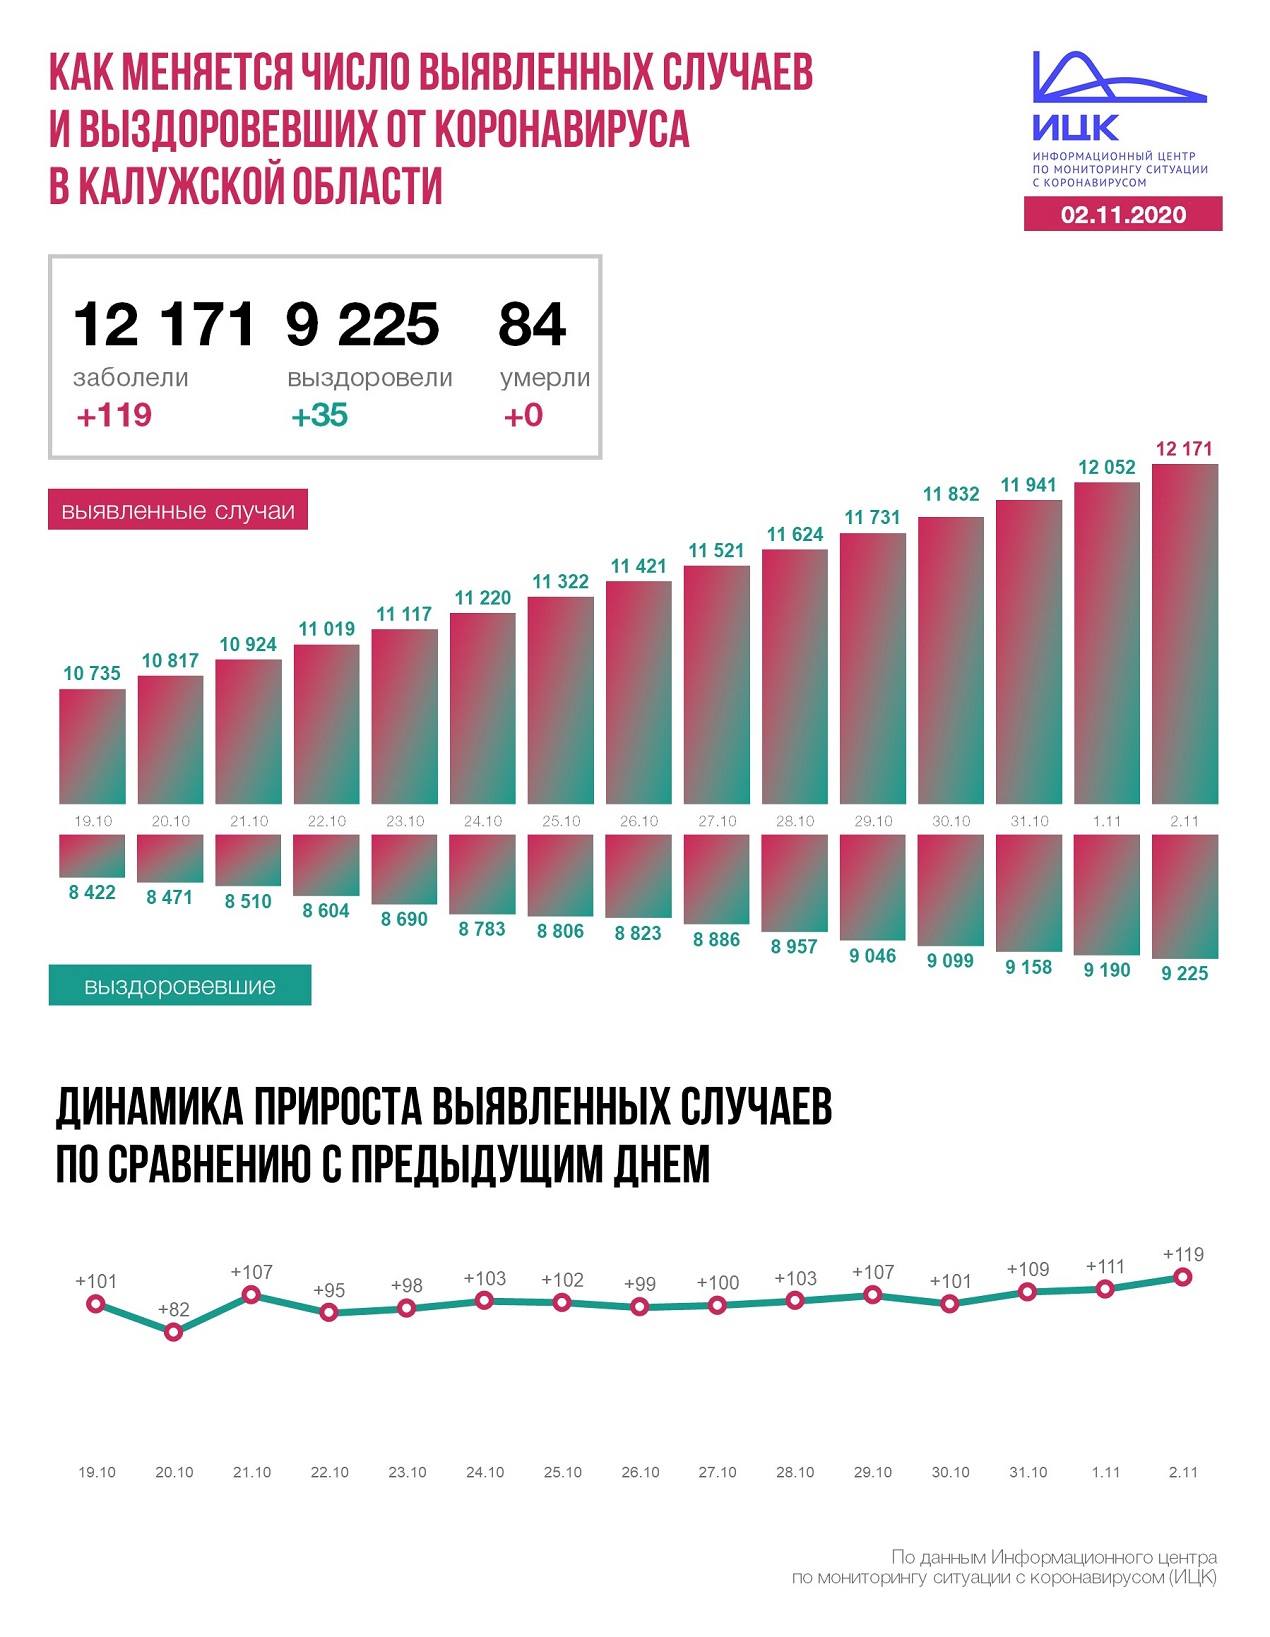  Официальные данные федерального оперативного штаба по коронавирусу в Калужской области на 2 ноября 2020 года.